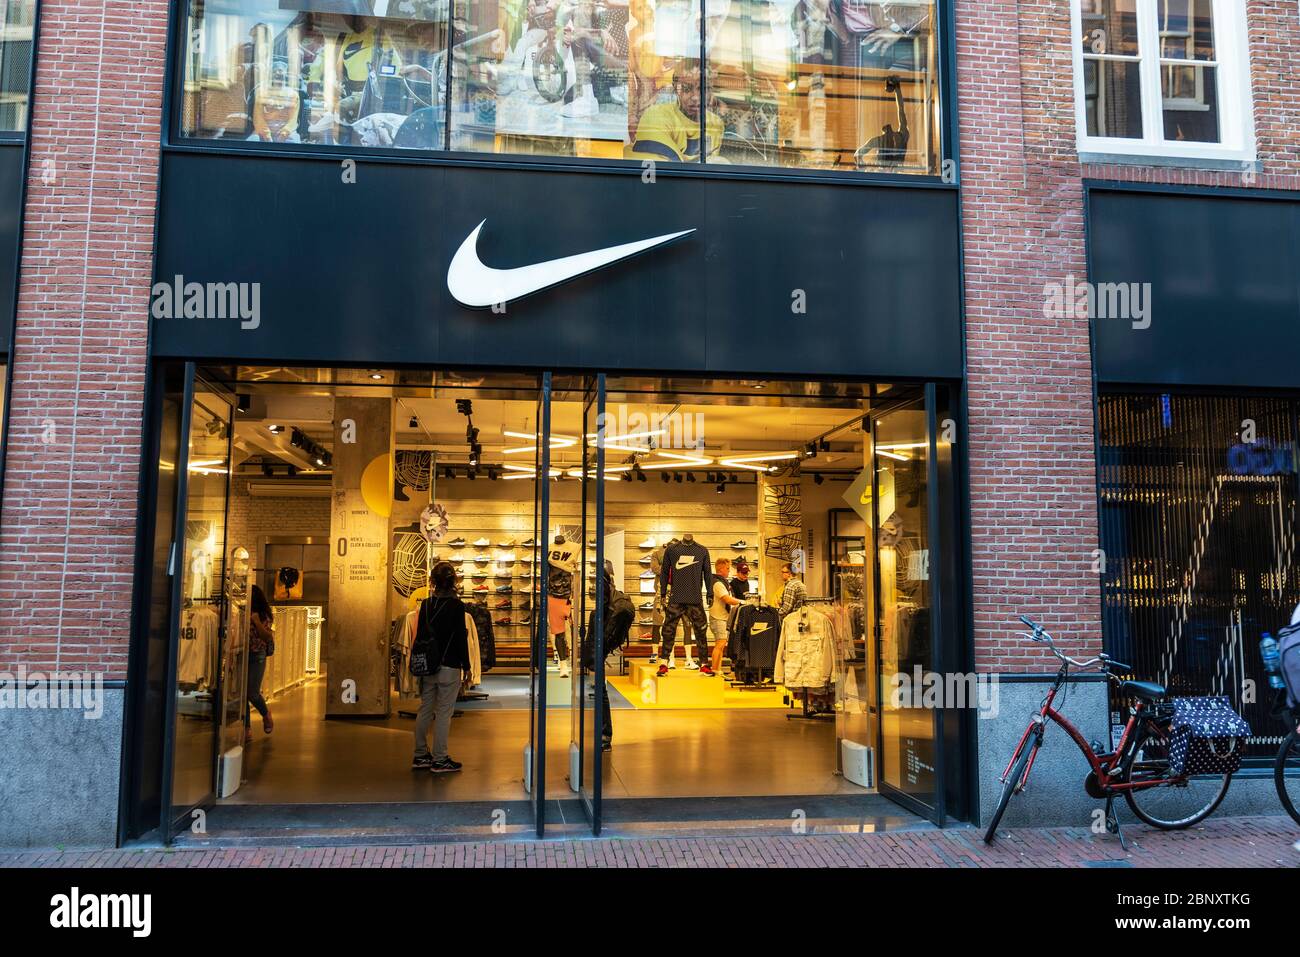 Nike Store Entrance Banque d'image et photos - Alamy